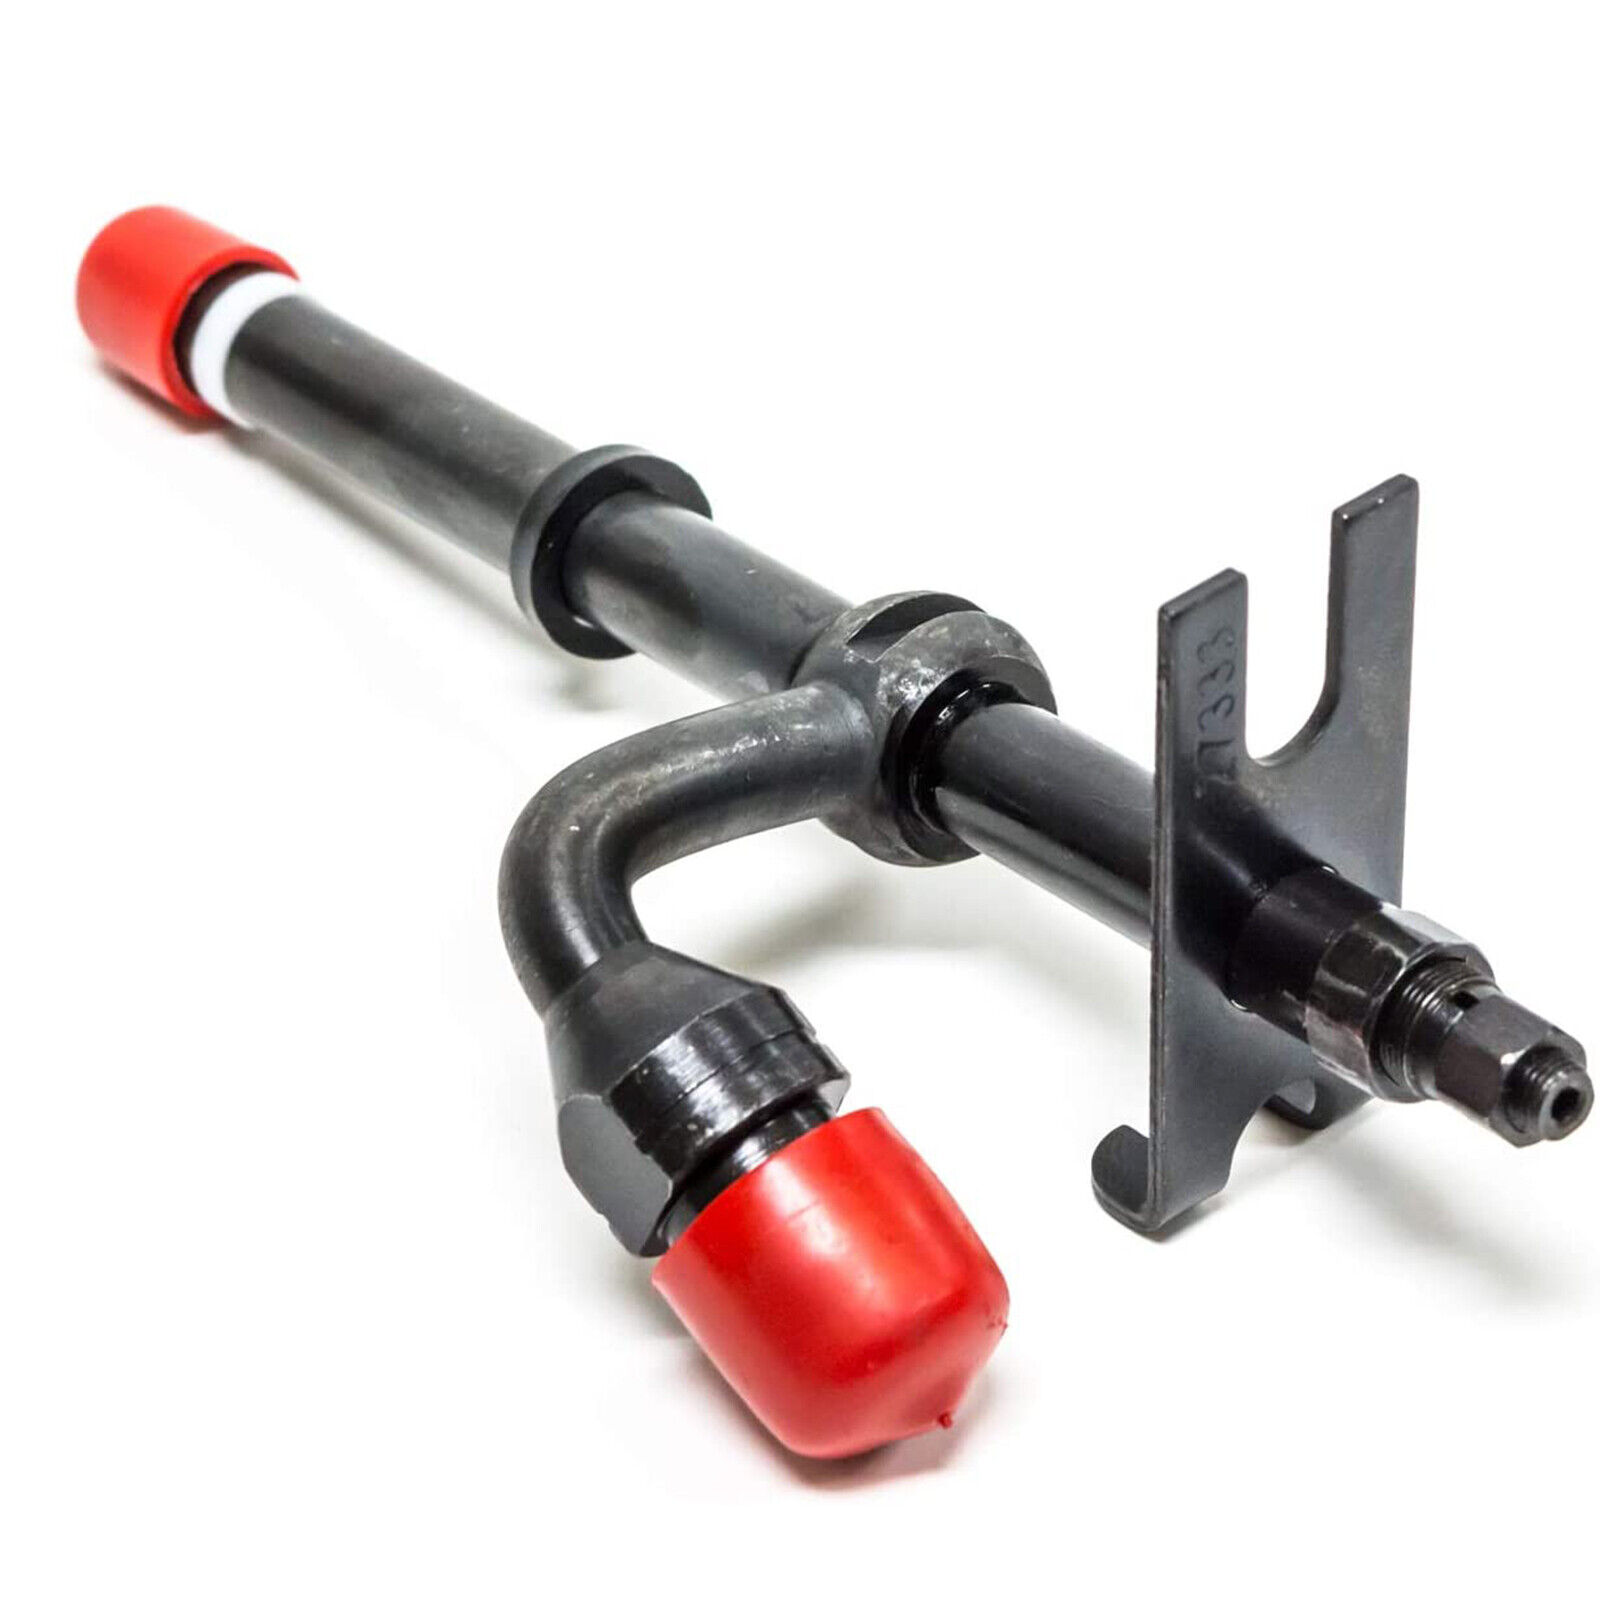 Fuel Injector Nozzle Pencil for John Deere 820 920 930 2440 2510 2520 2550 2555